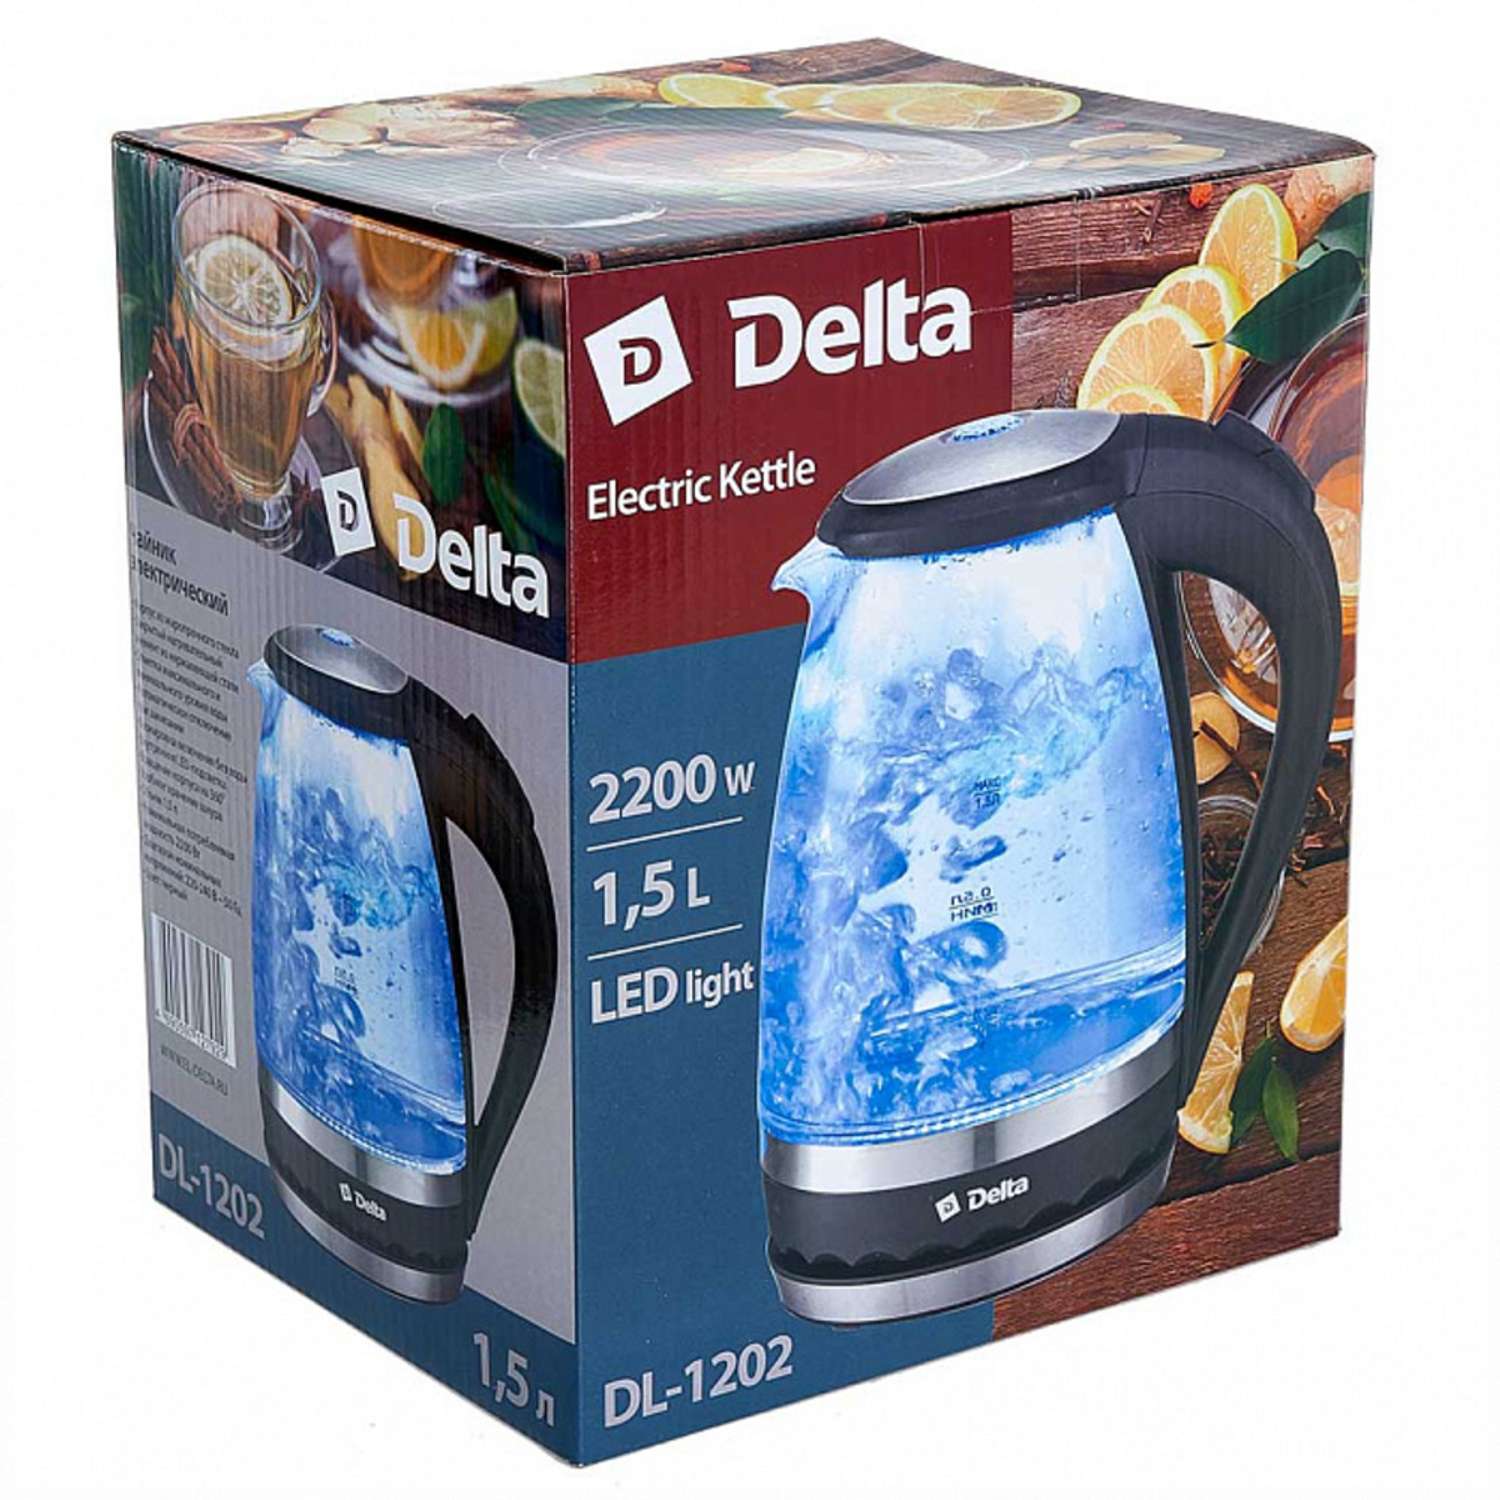 Электрический чайник Delta DL-1202 корпус из жаропрочного стекла черный 2200 Вт - фото 4